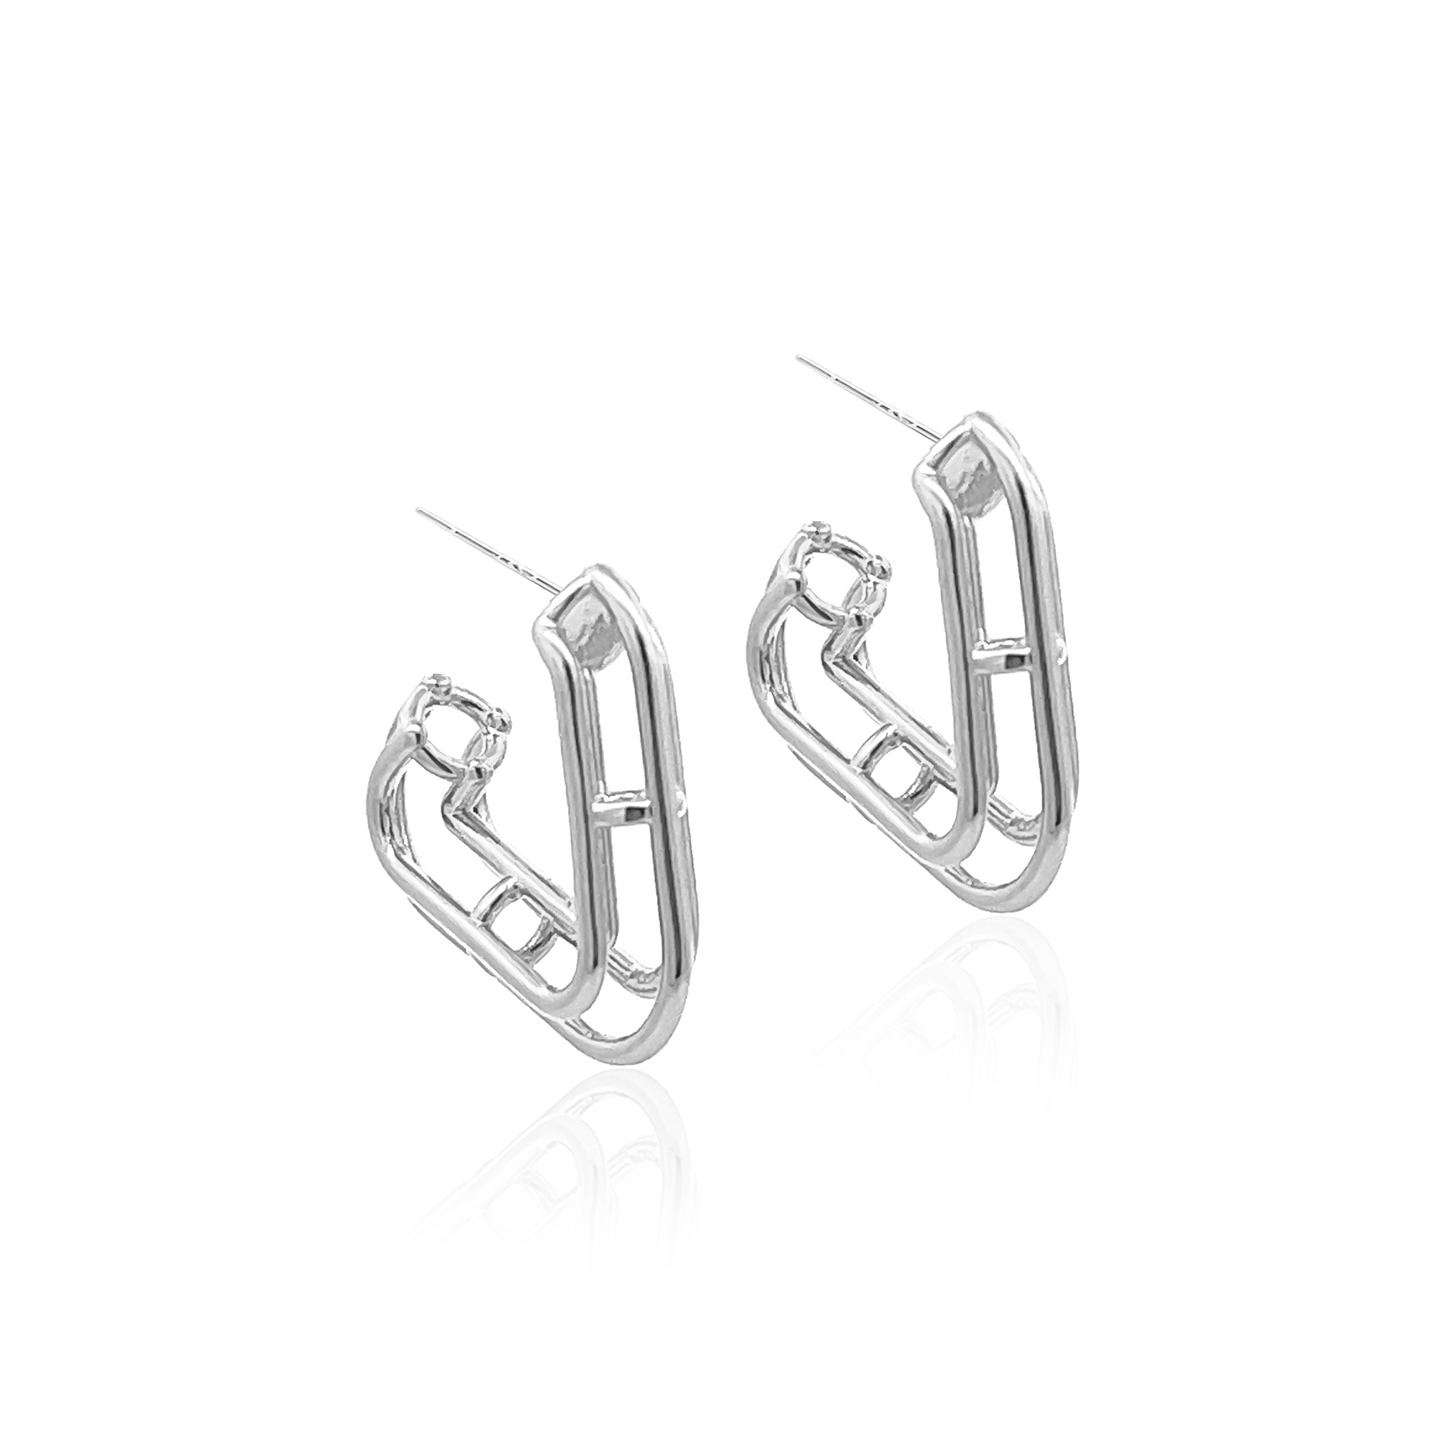 Alps Earrings in Silver